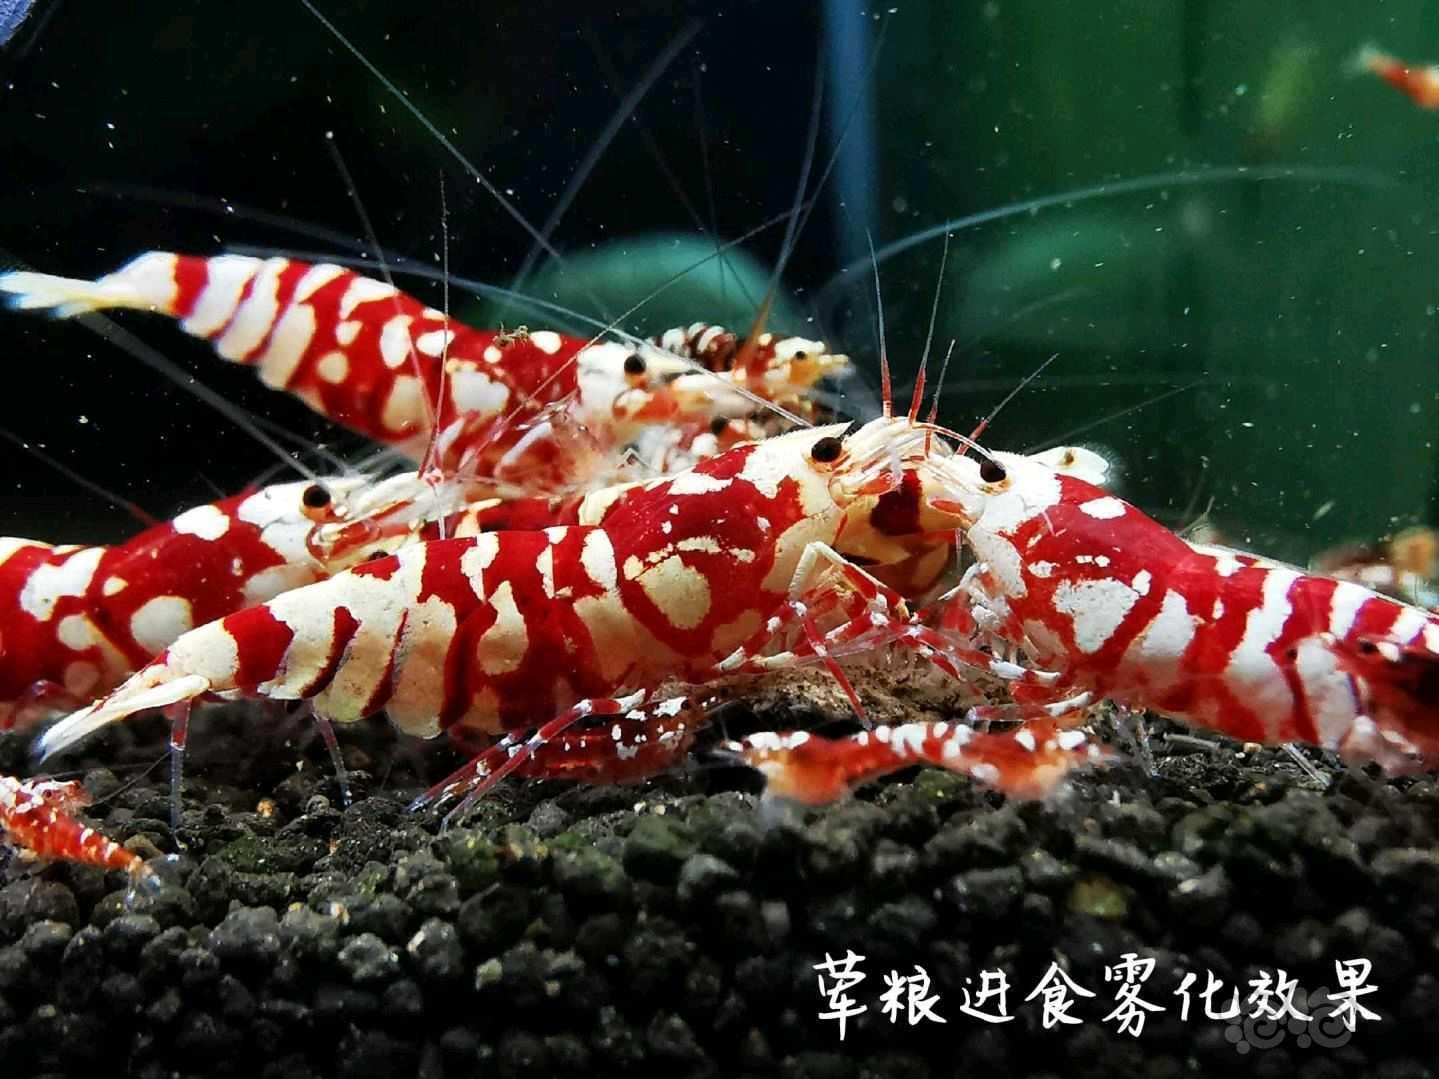 【用品】2021-07-05RMB拍卖瑾福水晶虾饲料套装一套-图7